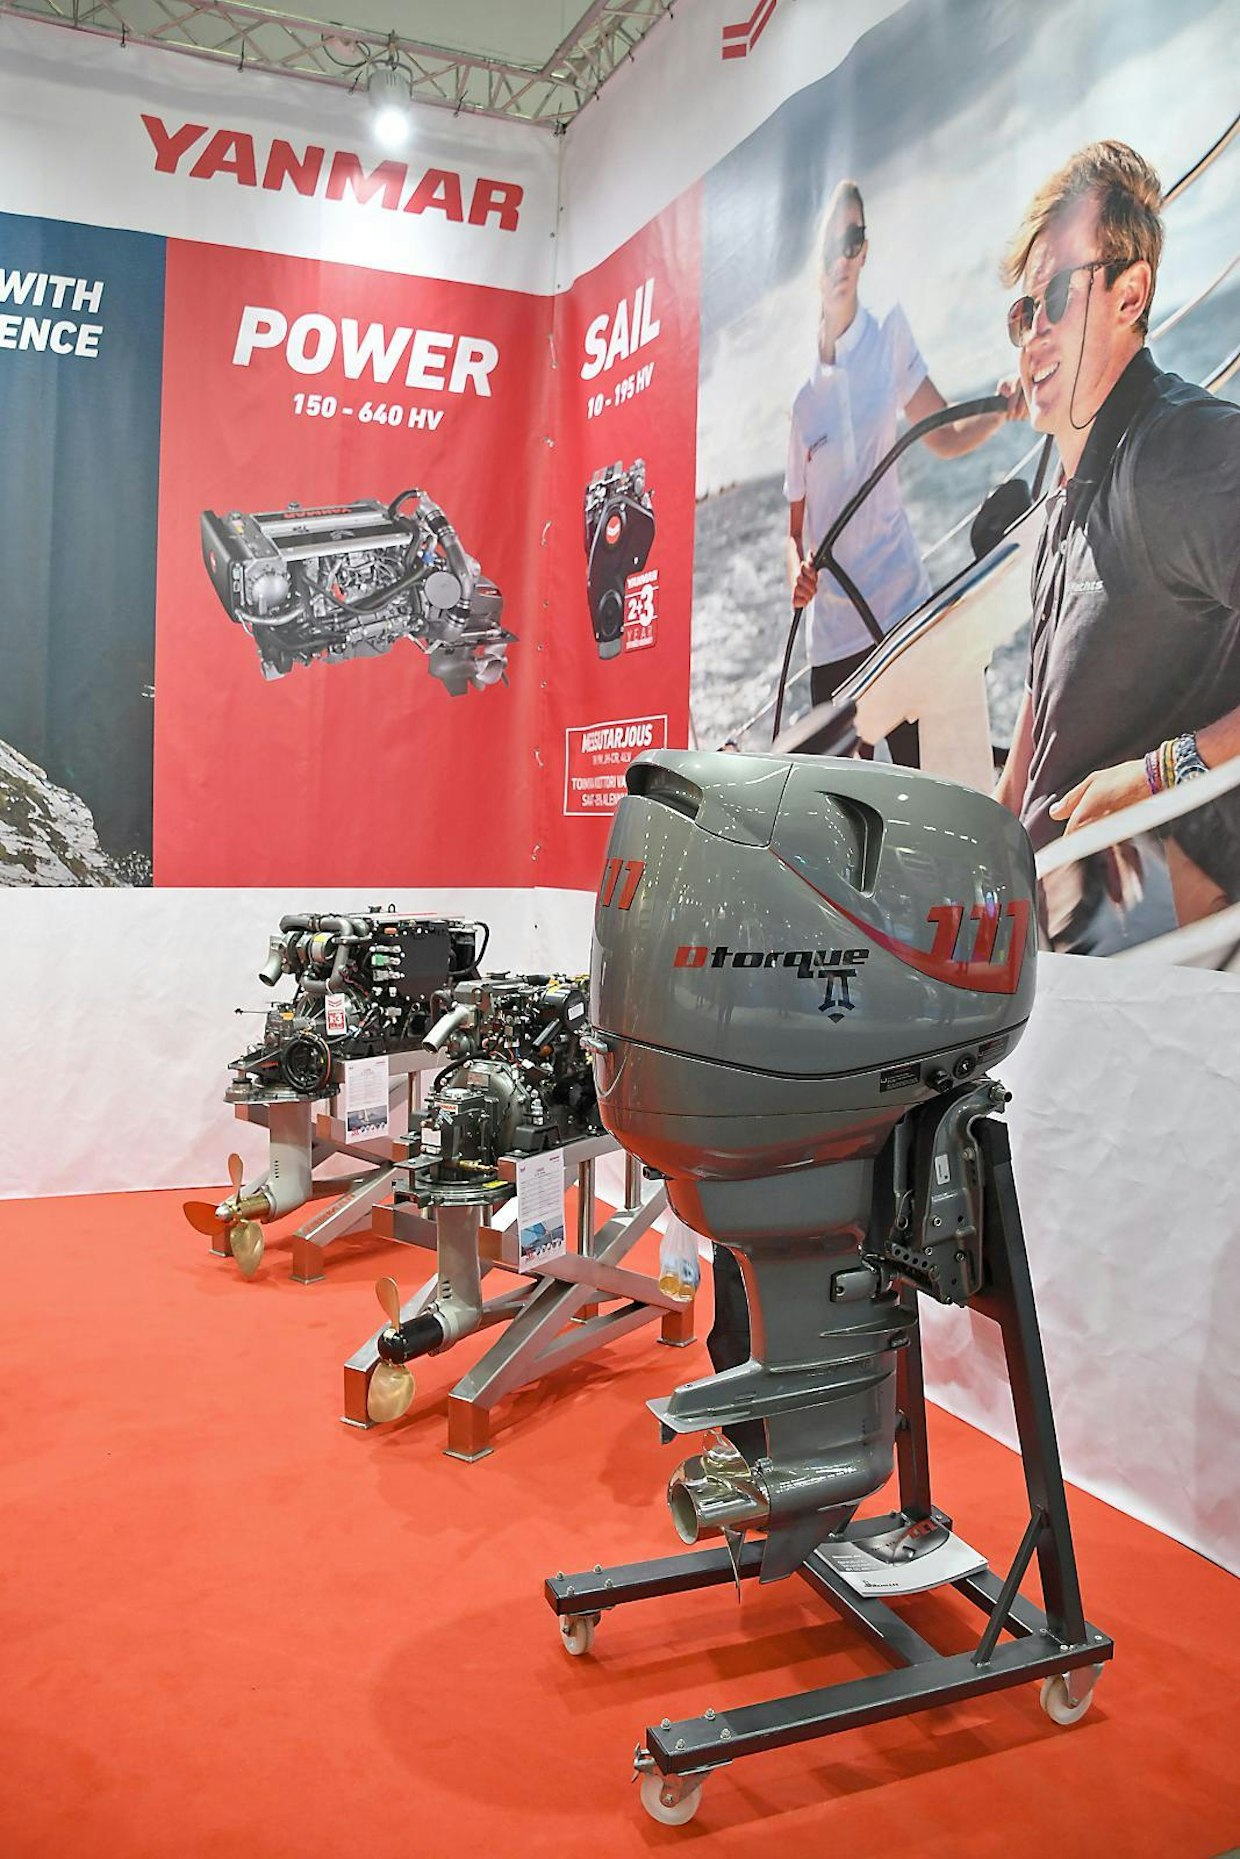 Yanmar DTorque on kaksisylinterinen dieselperämoottori. Turbolla varustetun moottorin tilavuus on 804 cm3 ja tehoksi ilmoitetaan 50 hv.  Maksimi vääntömomentti 111 Nm saavutetaan kierroslukualueella 2000–3000 rpm.